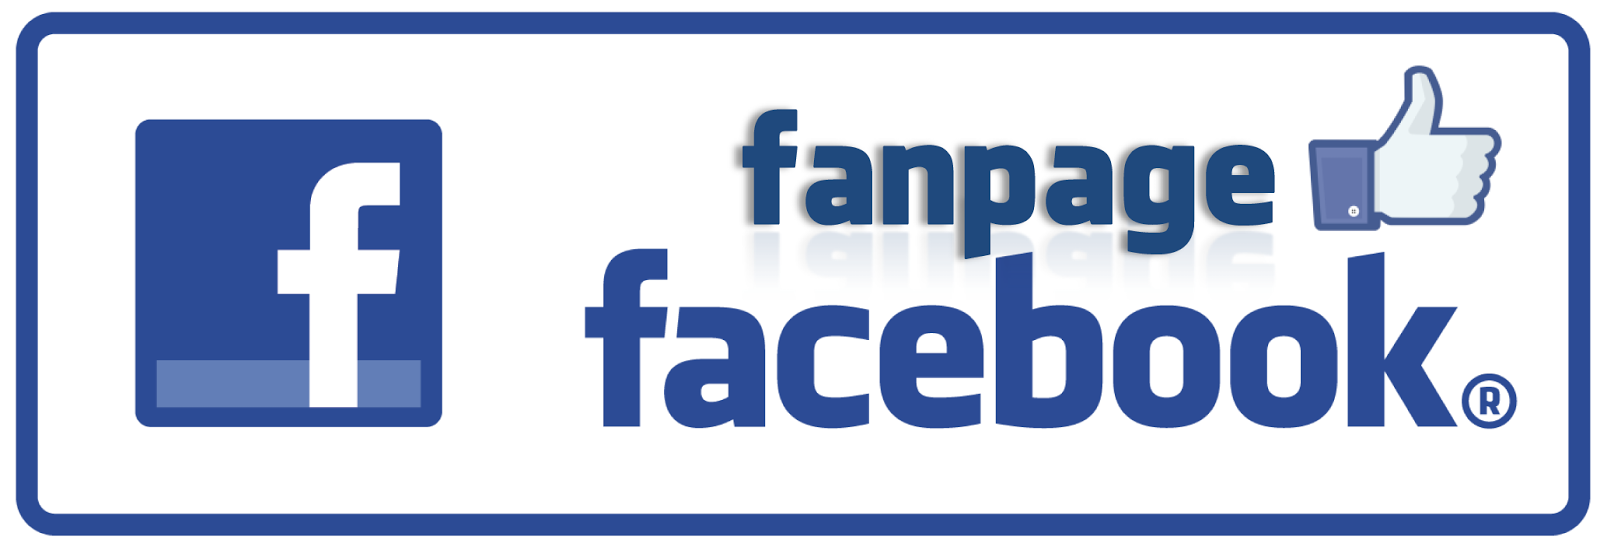 fanpage-logo